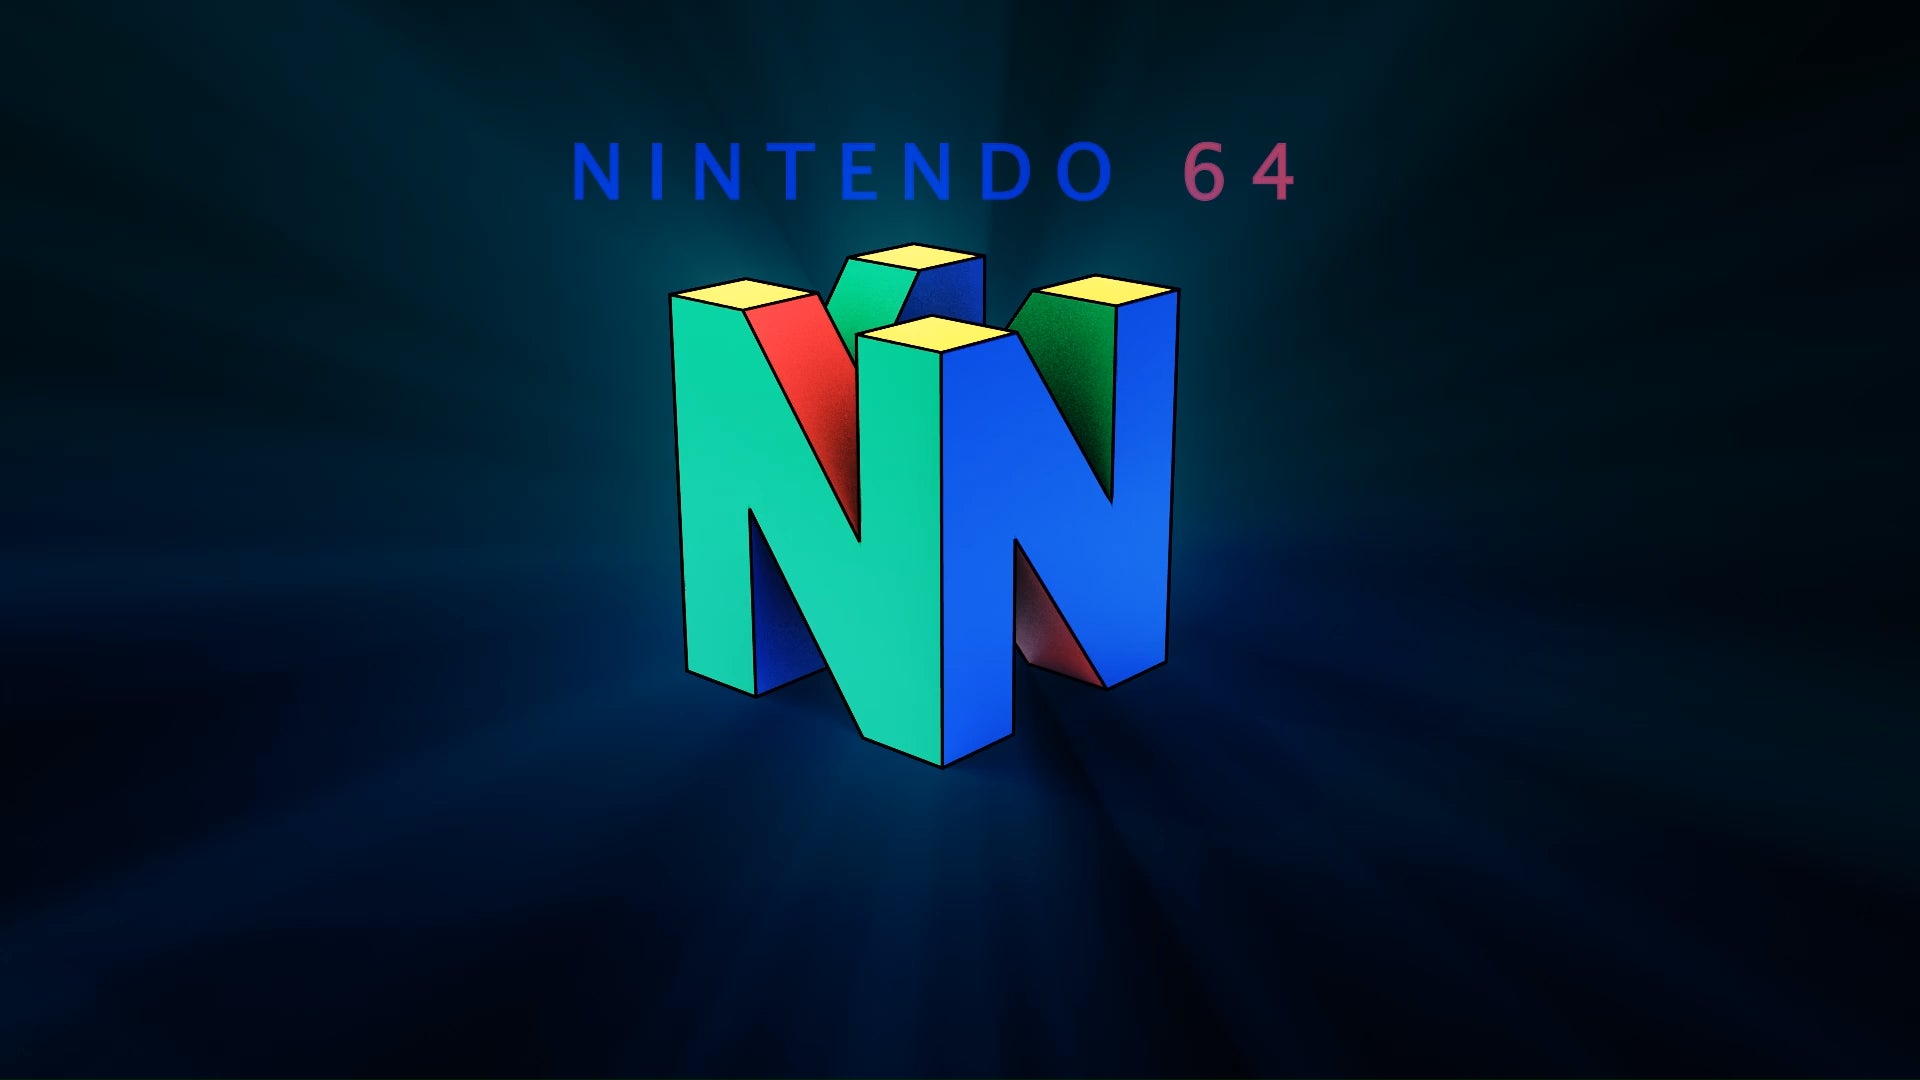 Nintendo 64 Wallpapers